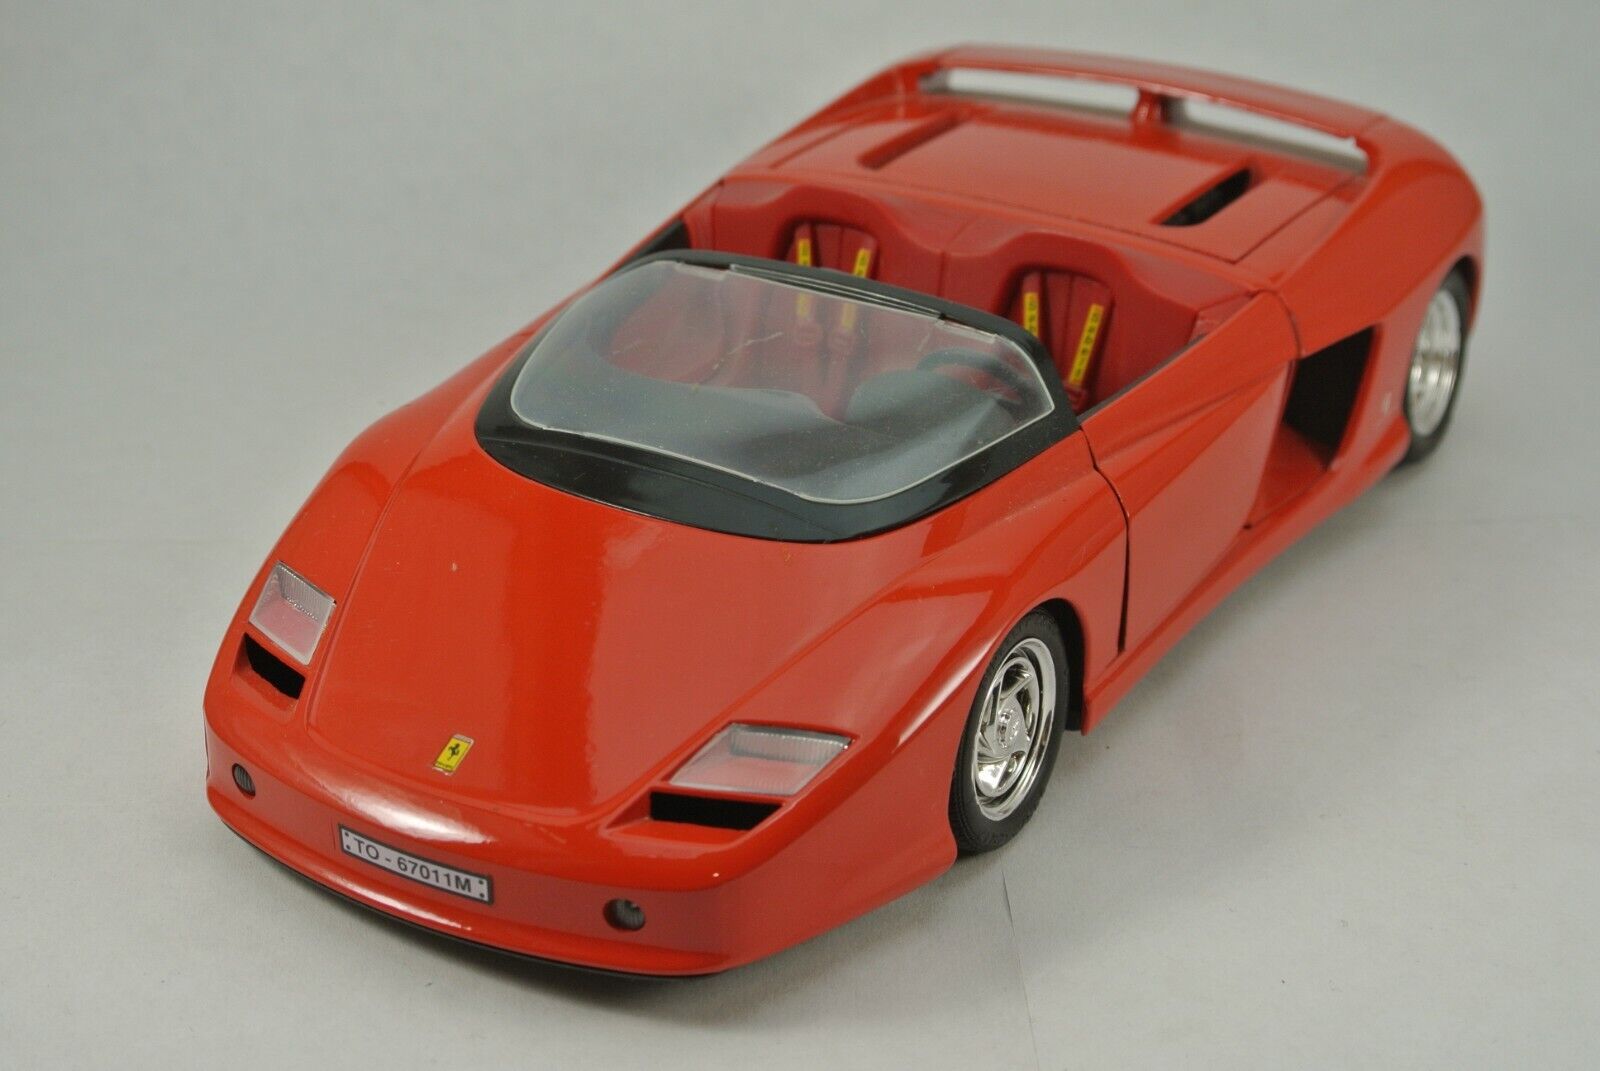 Guiloy Ferrari Mythos 1/18 Scale Die Cast Model